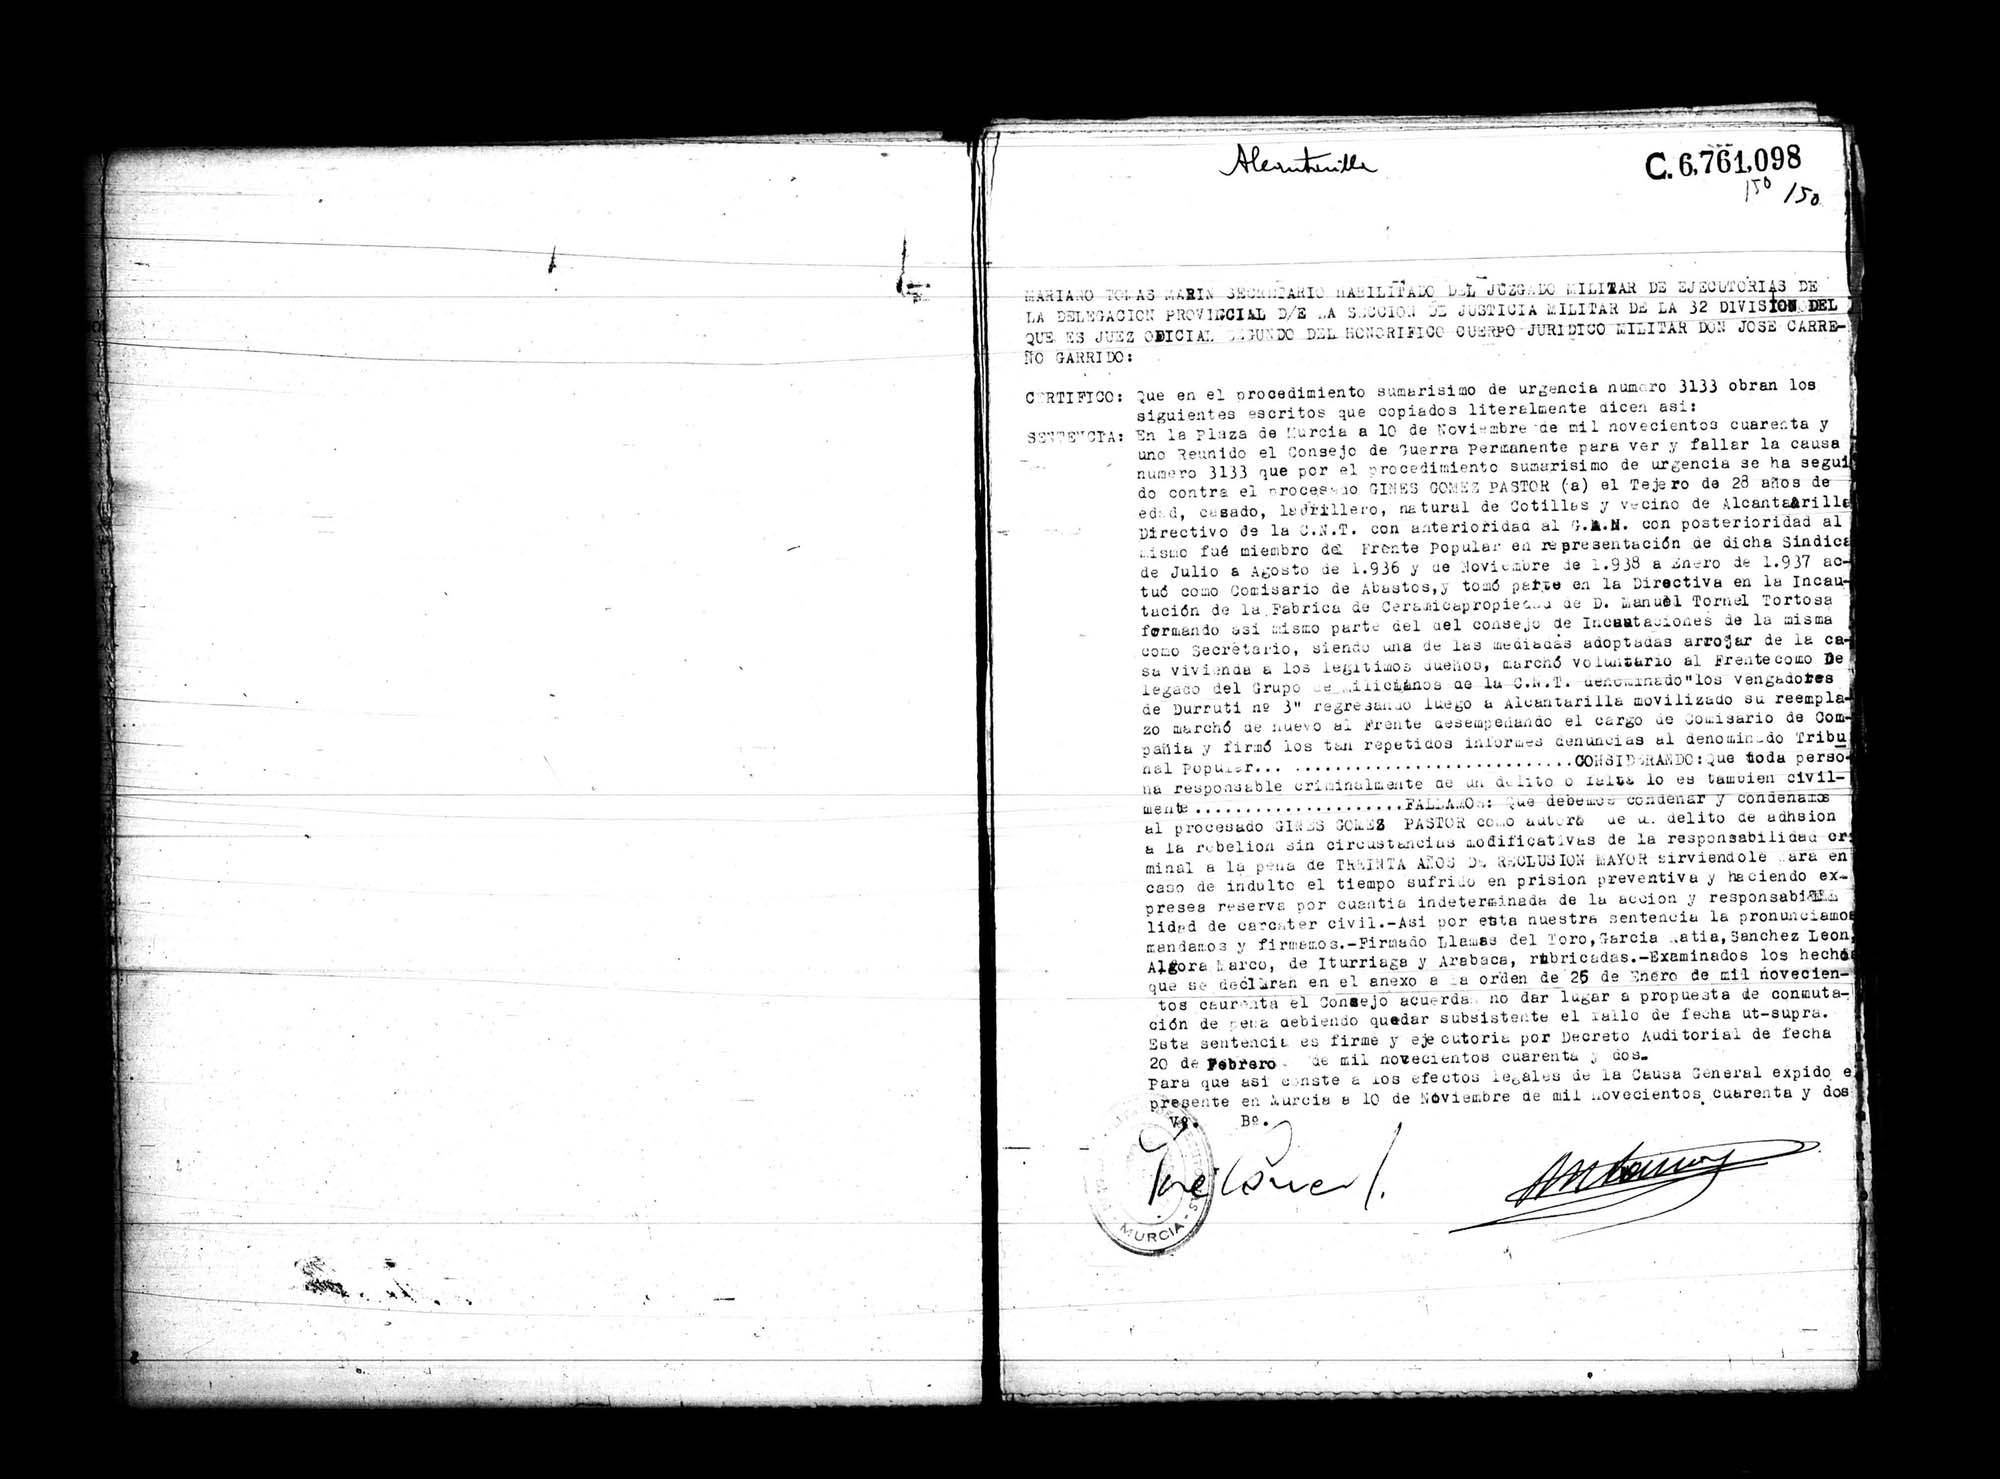 Certificado de la sentencia pronunciada contra Ginés Gómez Pastor, causa 3133, el 10 de noviembre de 1941 en Murcia.